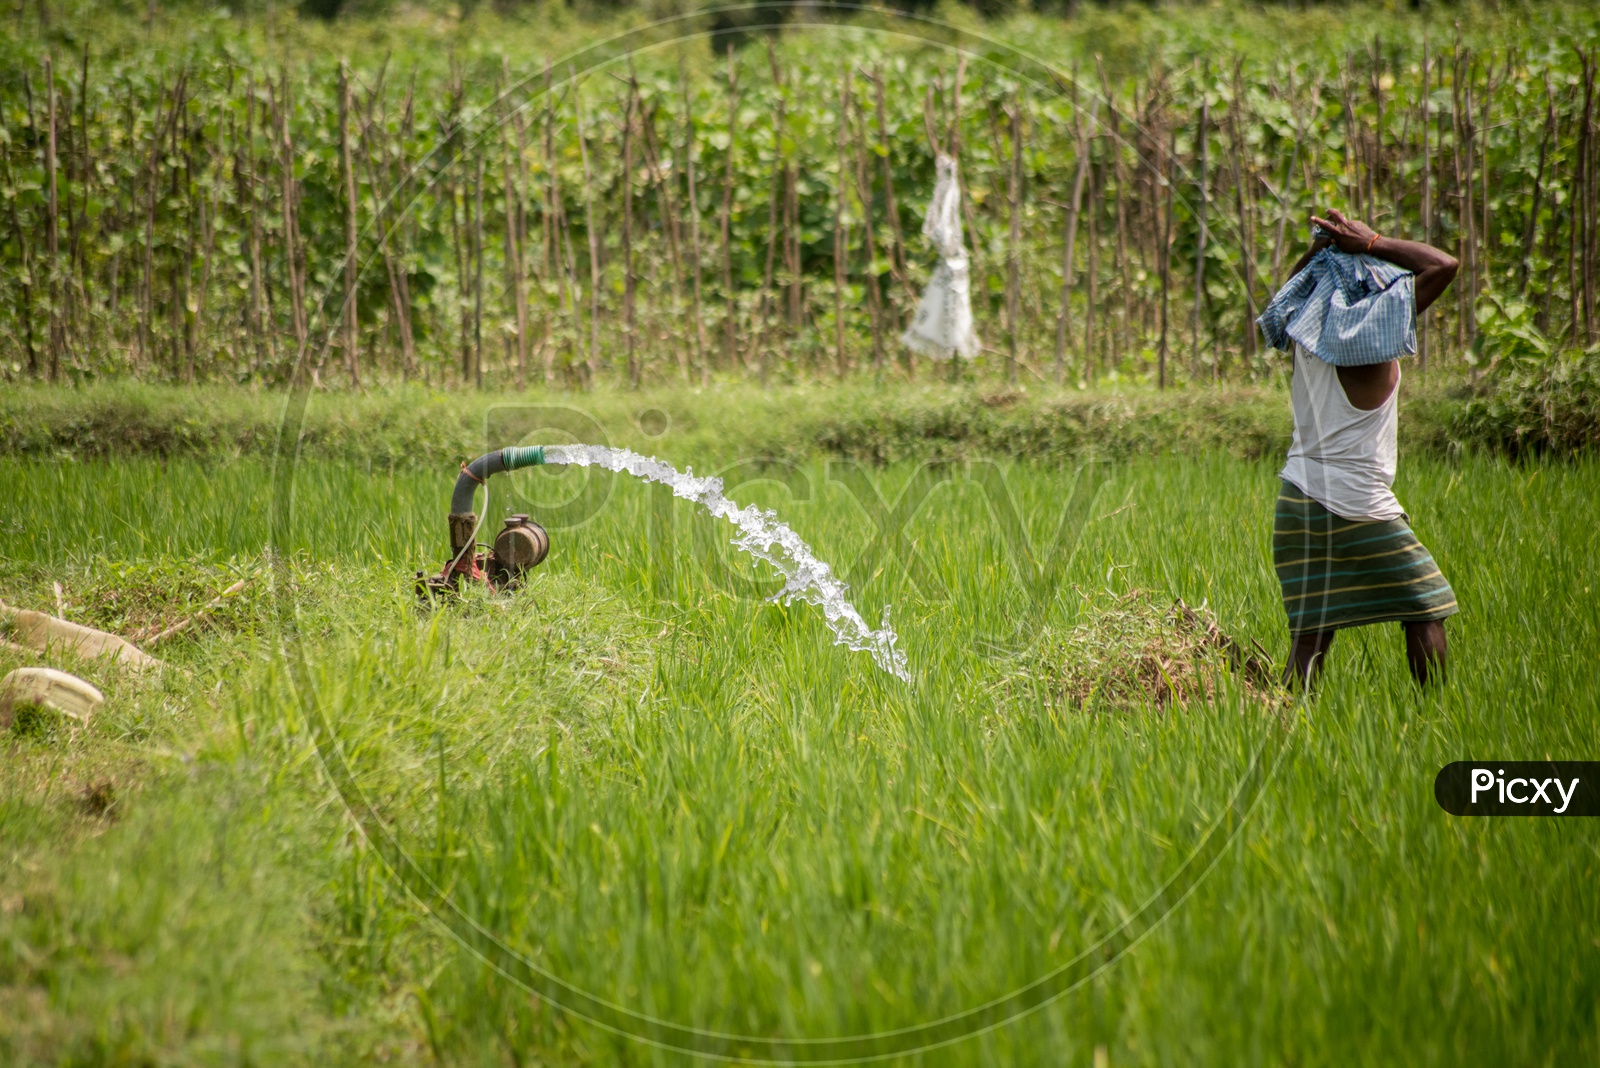 Water pumps in paddy fields